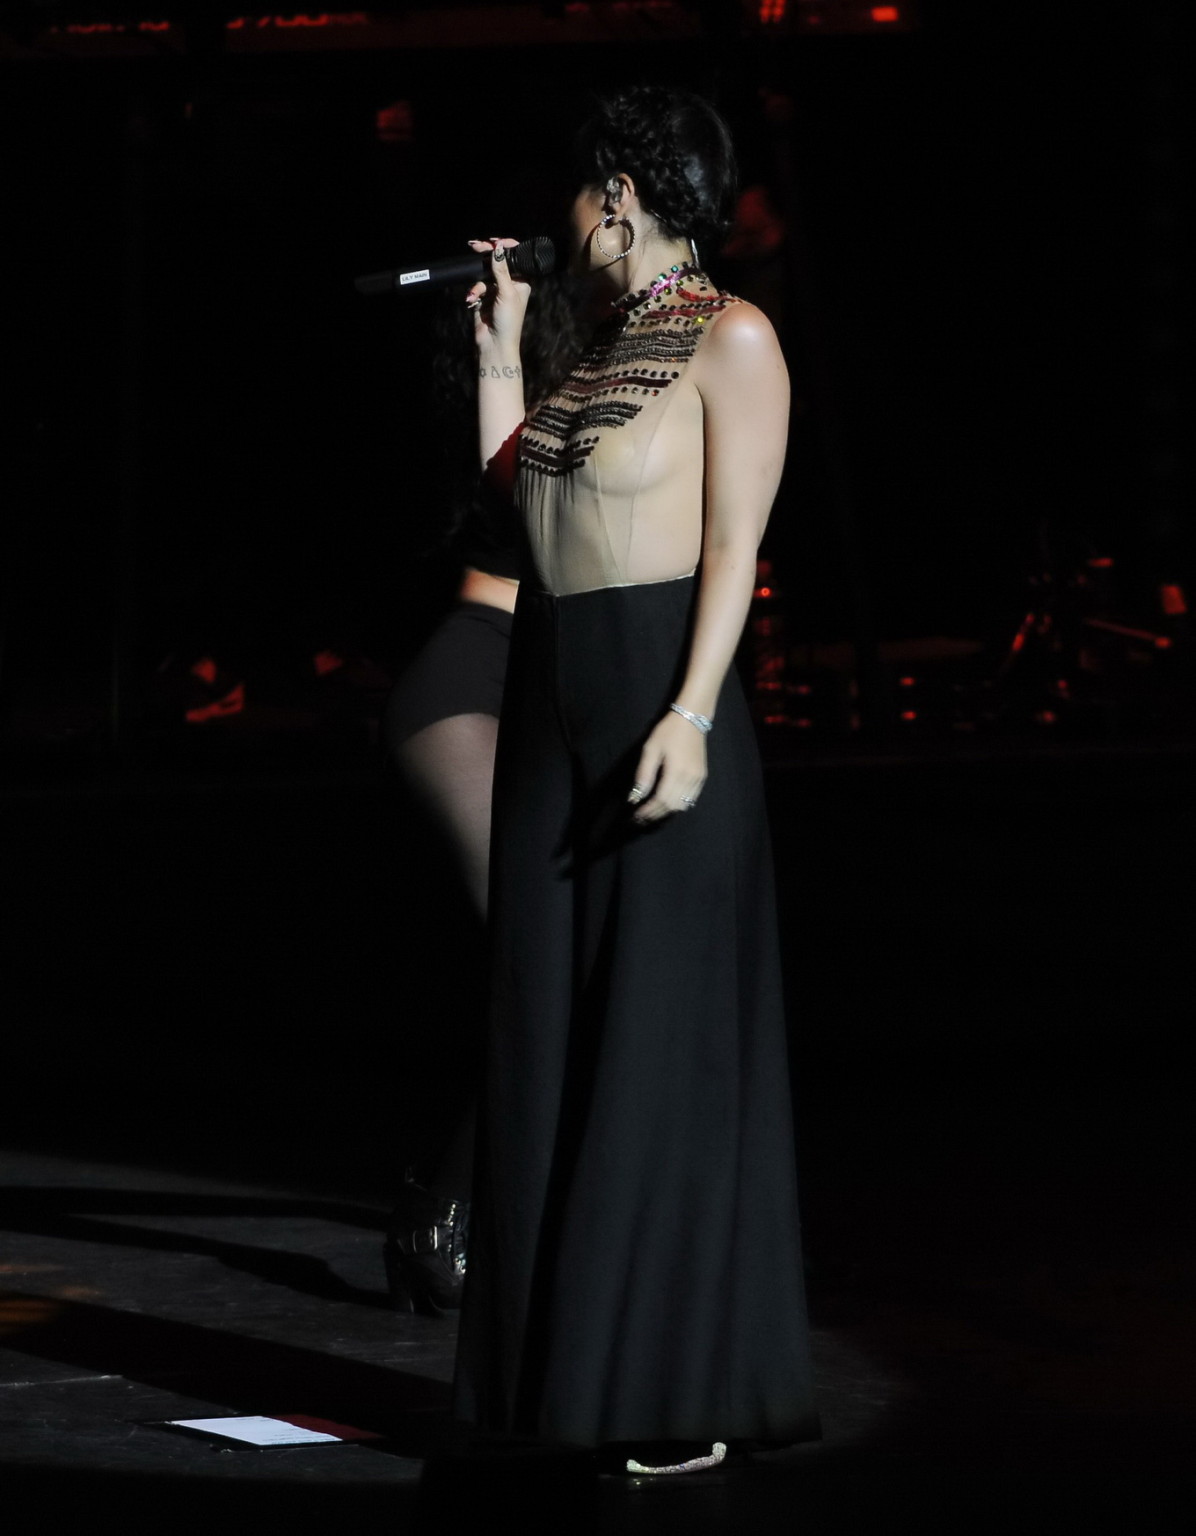 Lily allen seethru mostrando sus tetas en el escenario
 #75200191